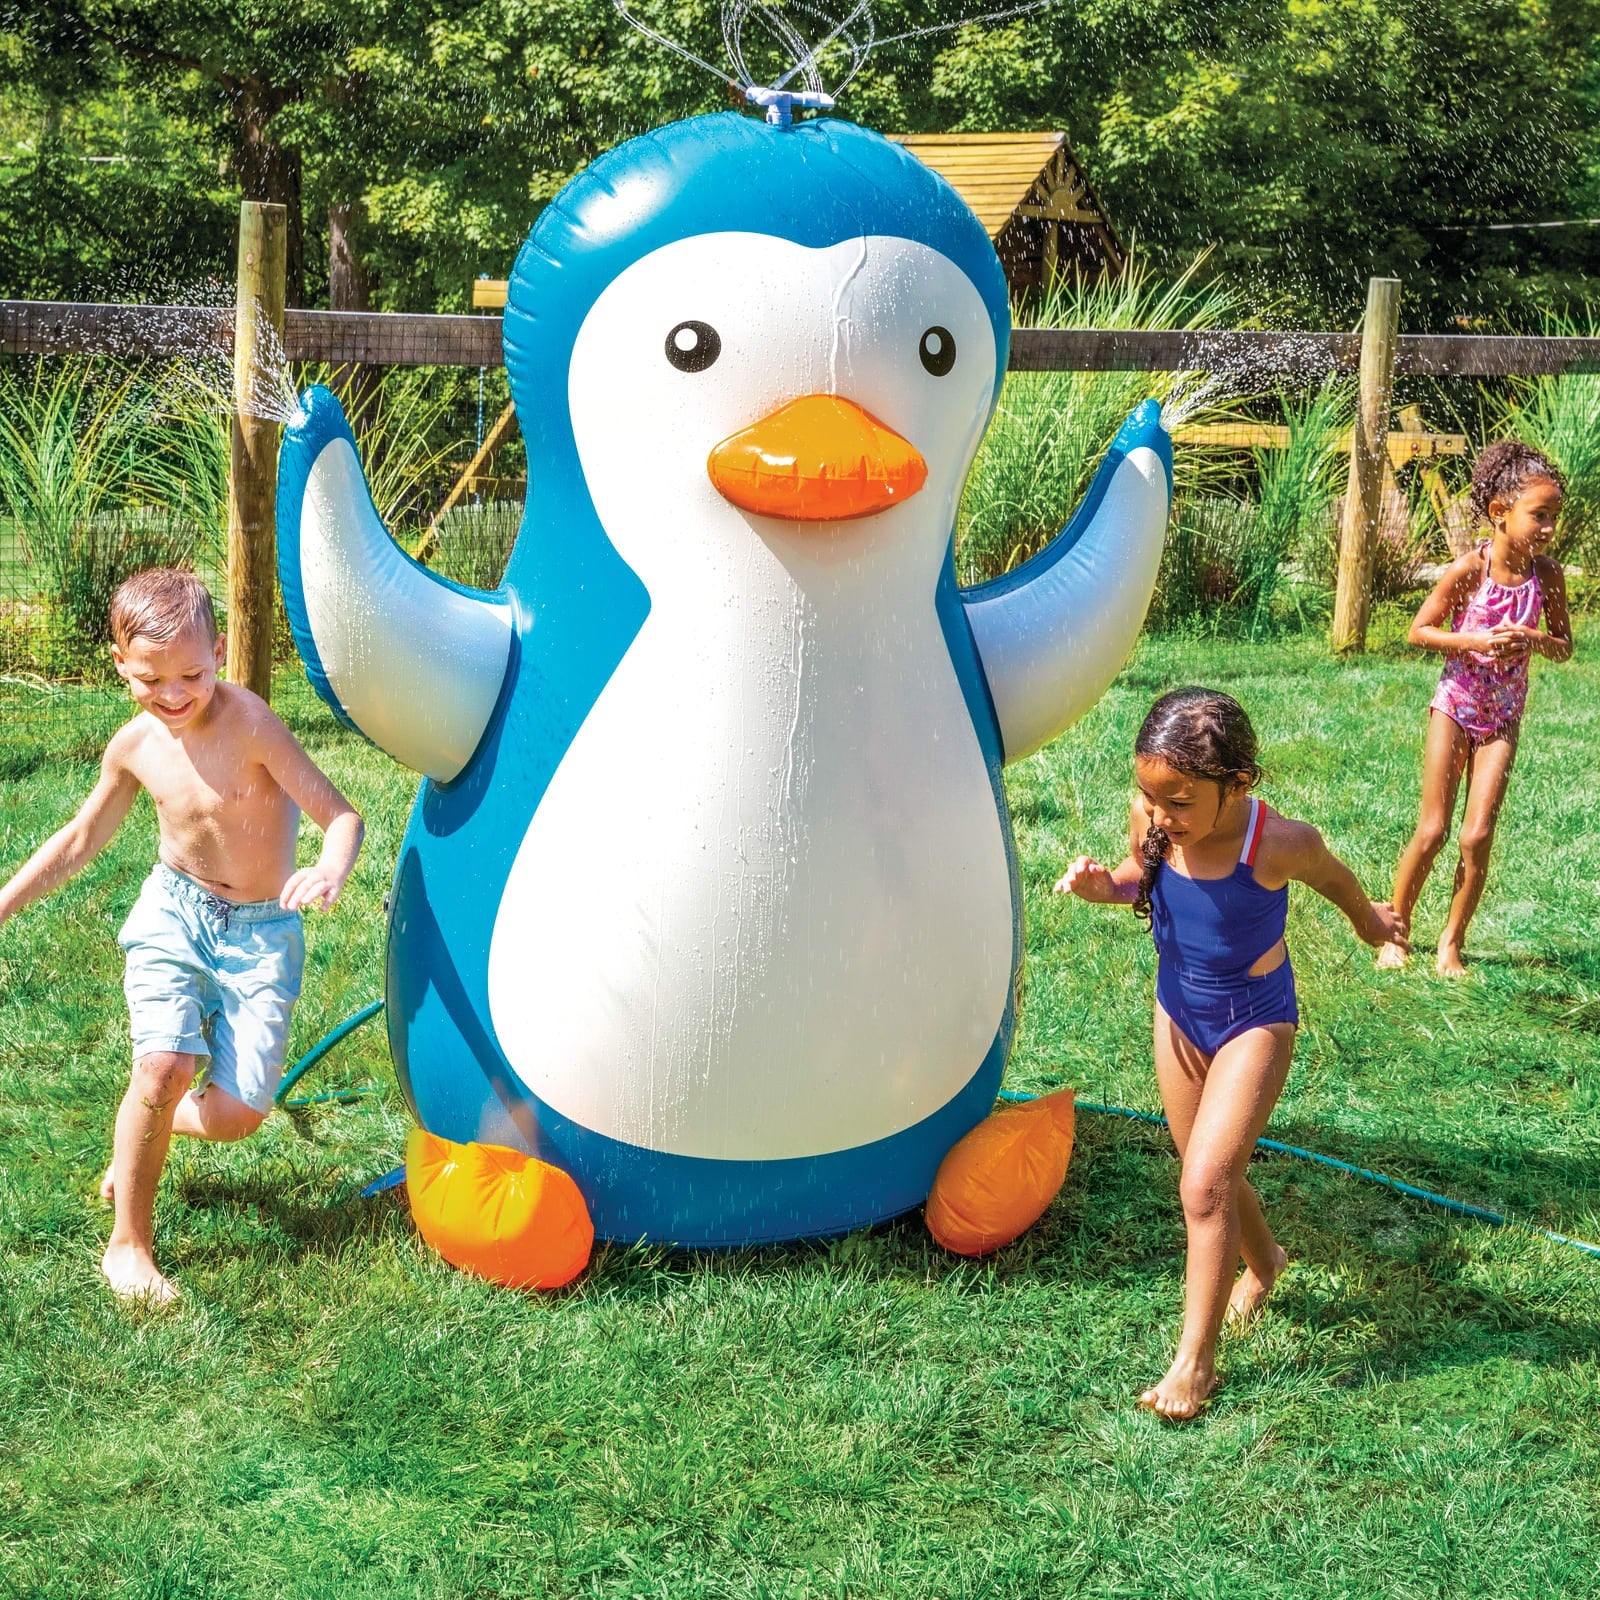 The Pinguino Backyard Sprinkler